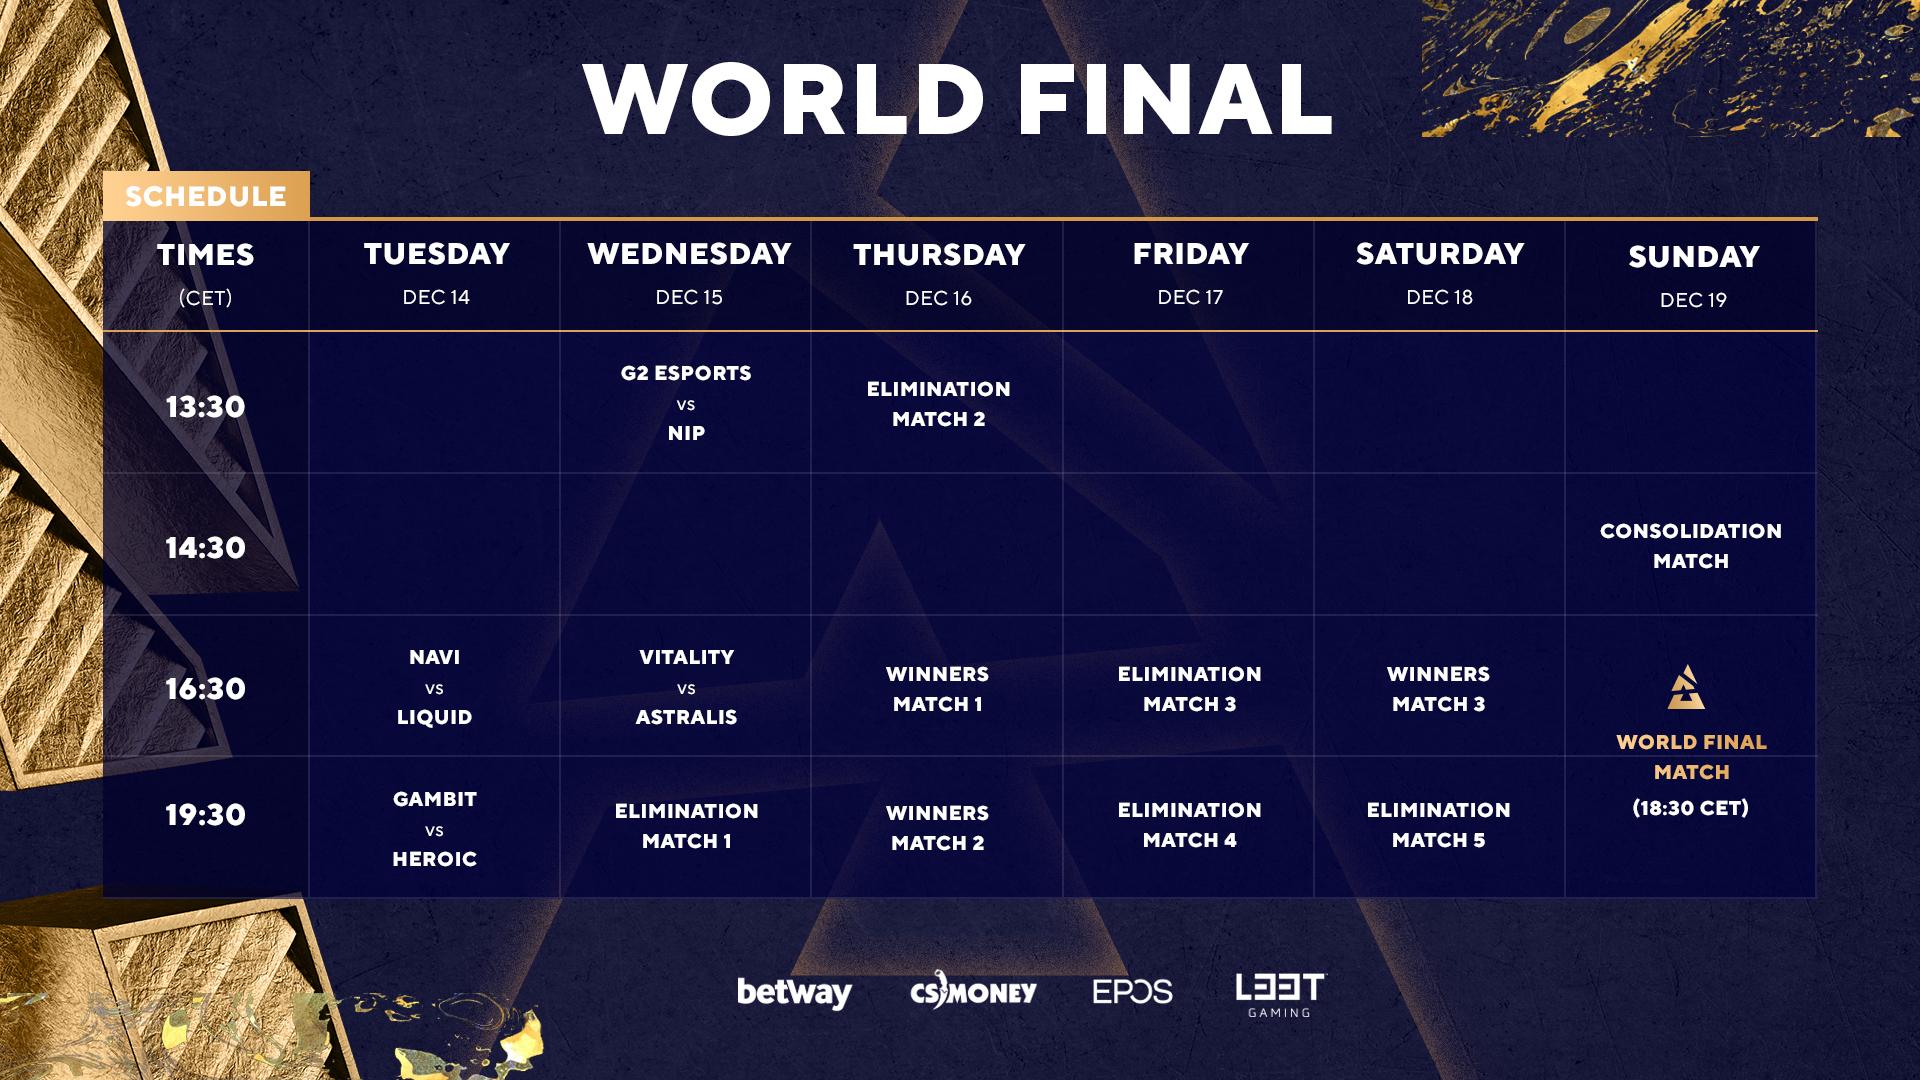 Takto vyzerá rozpis zápasov BLAST Premier World Final.